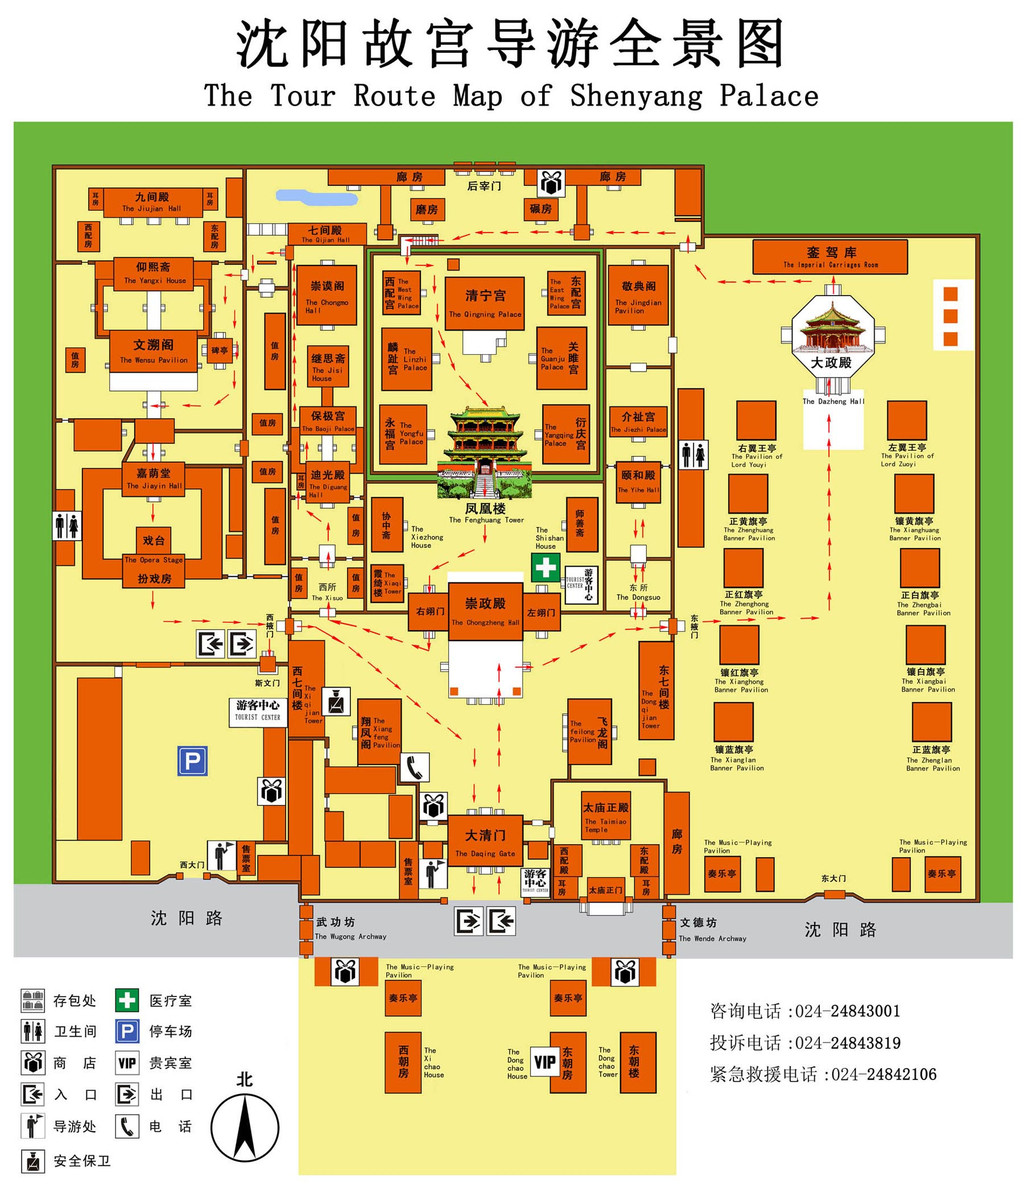 沈阳故宫的全景图,可以参考一下路线